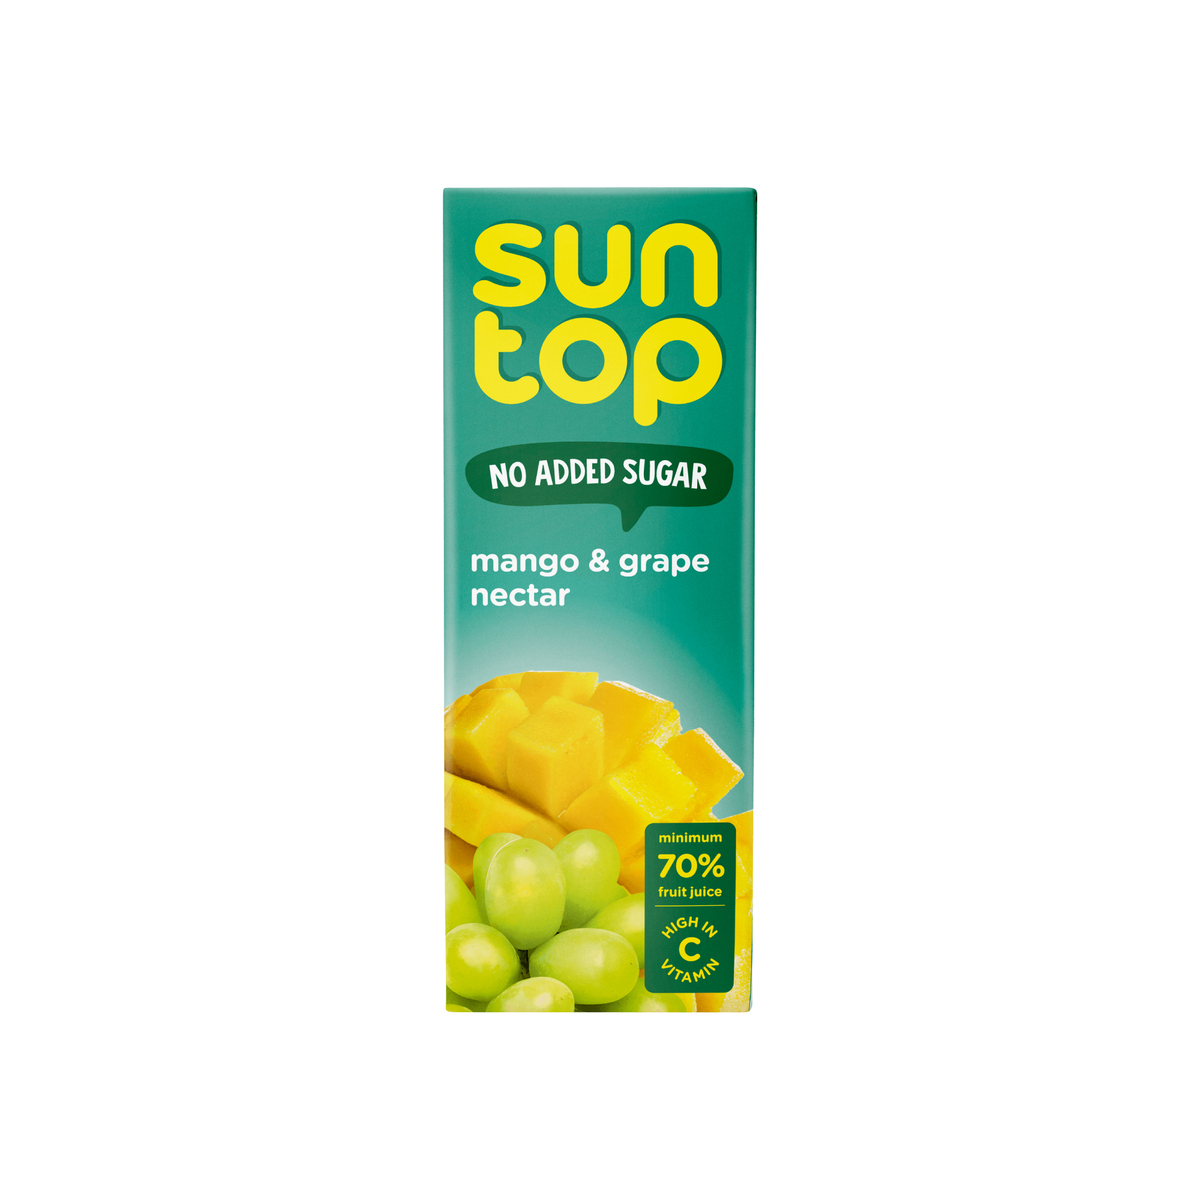 Suntop Mango & Grape Nectar No Added Sugar 18 x 180 ml